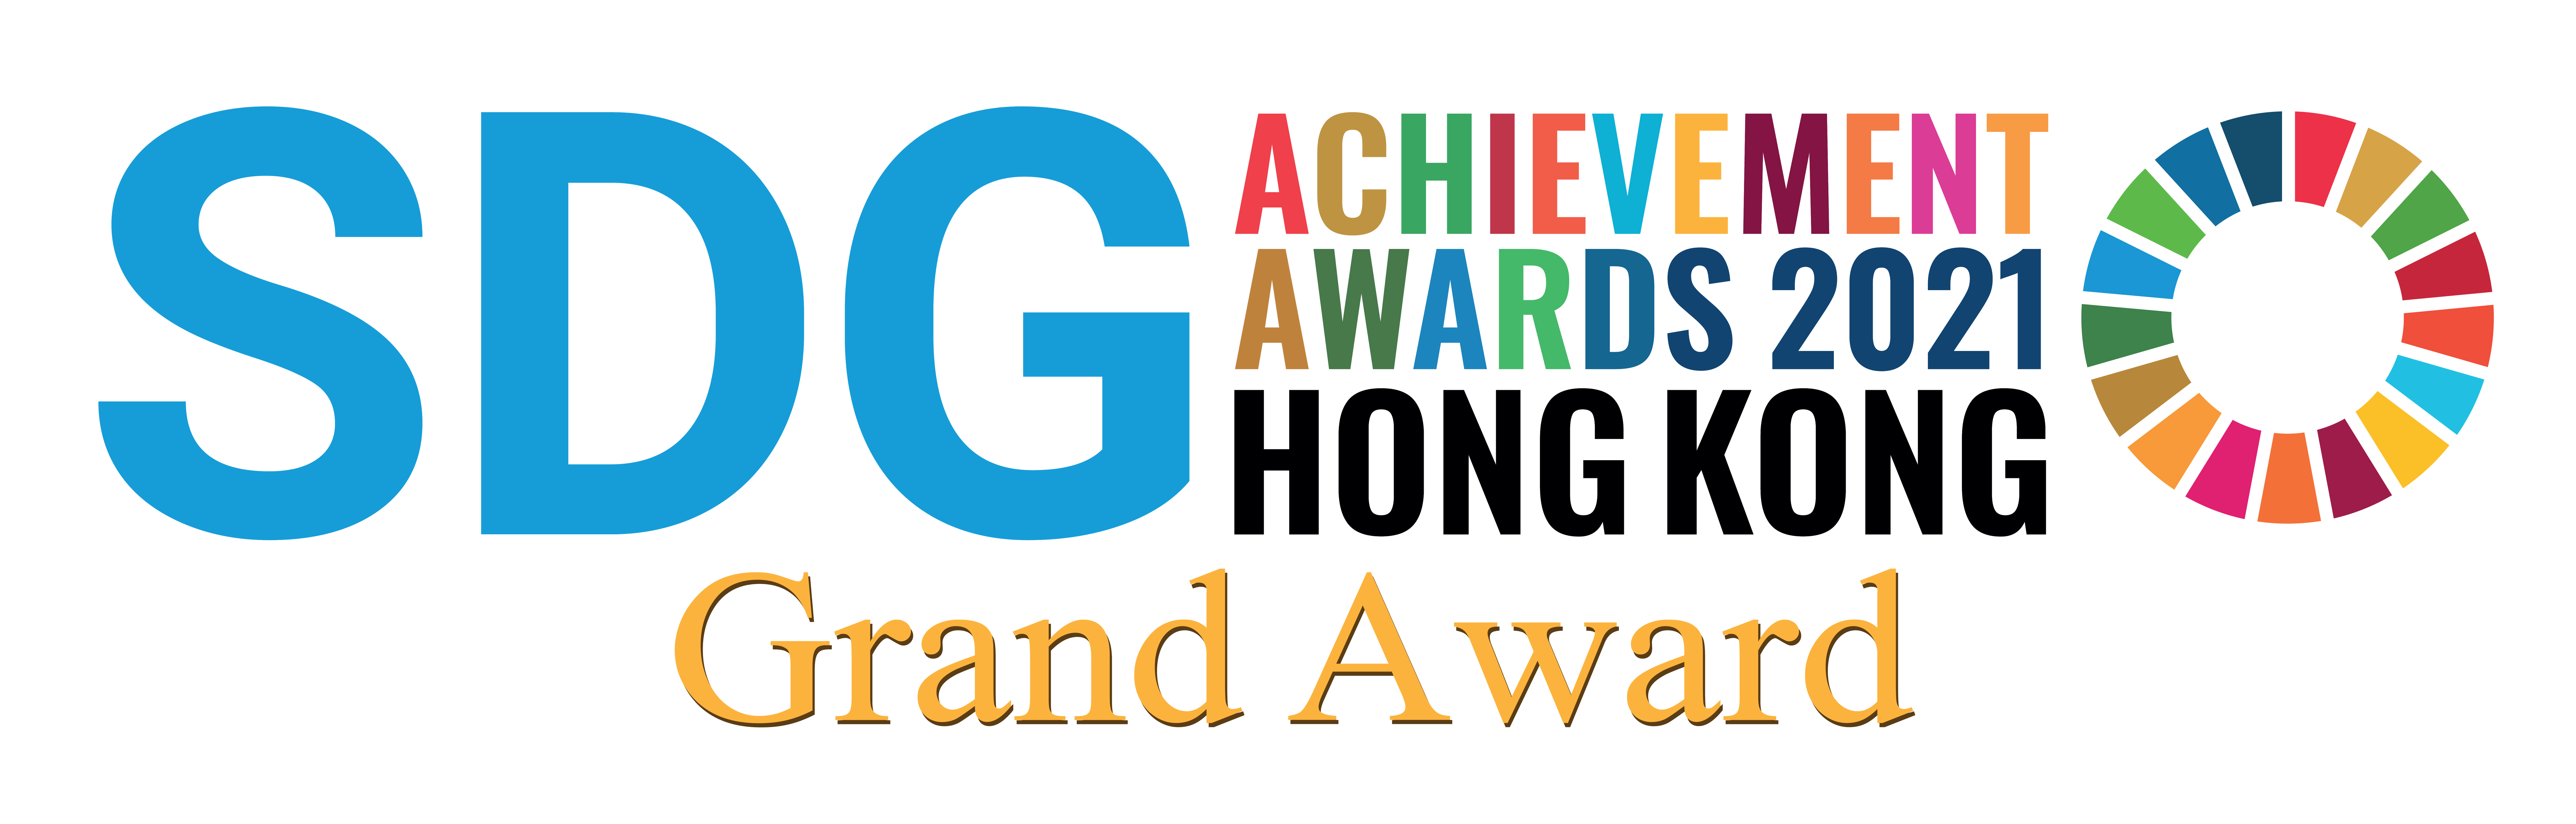 會展管理公司的「減塑行動」在環保促進會舉辦的「2021年聯合國可持續發展目標香港成就獎」中獲頒大獎、「持份者參與獎」及「最佳方法獎」